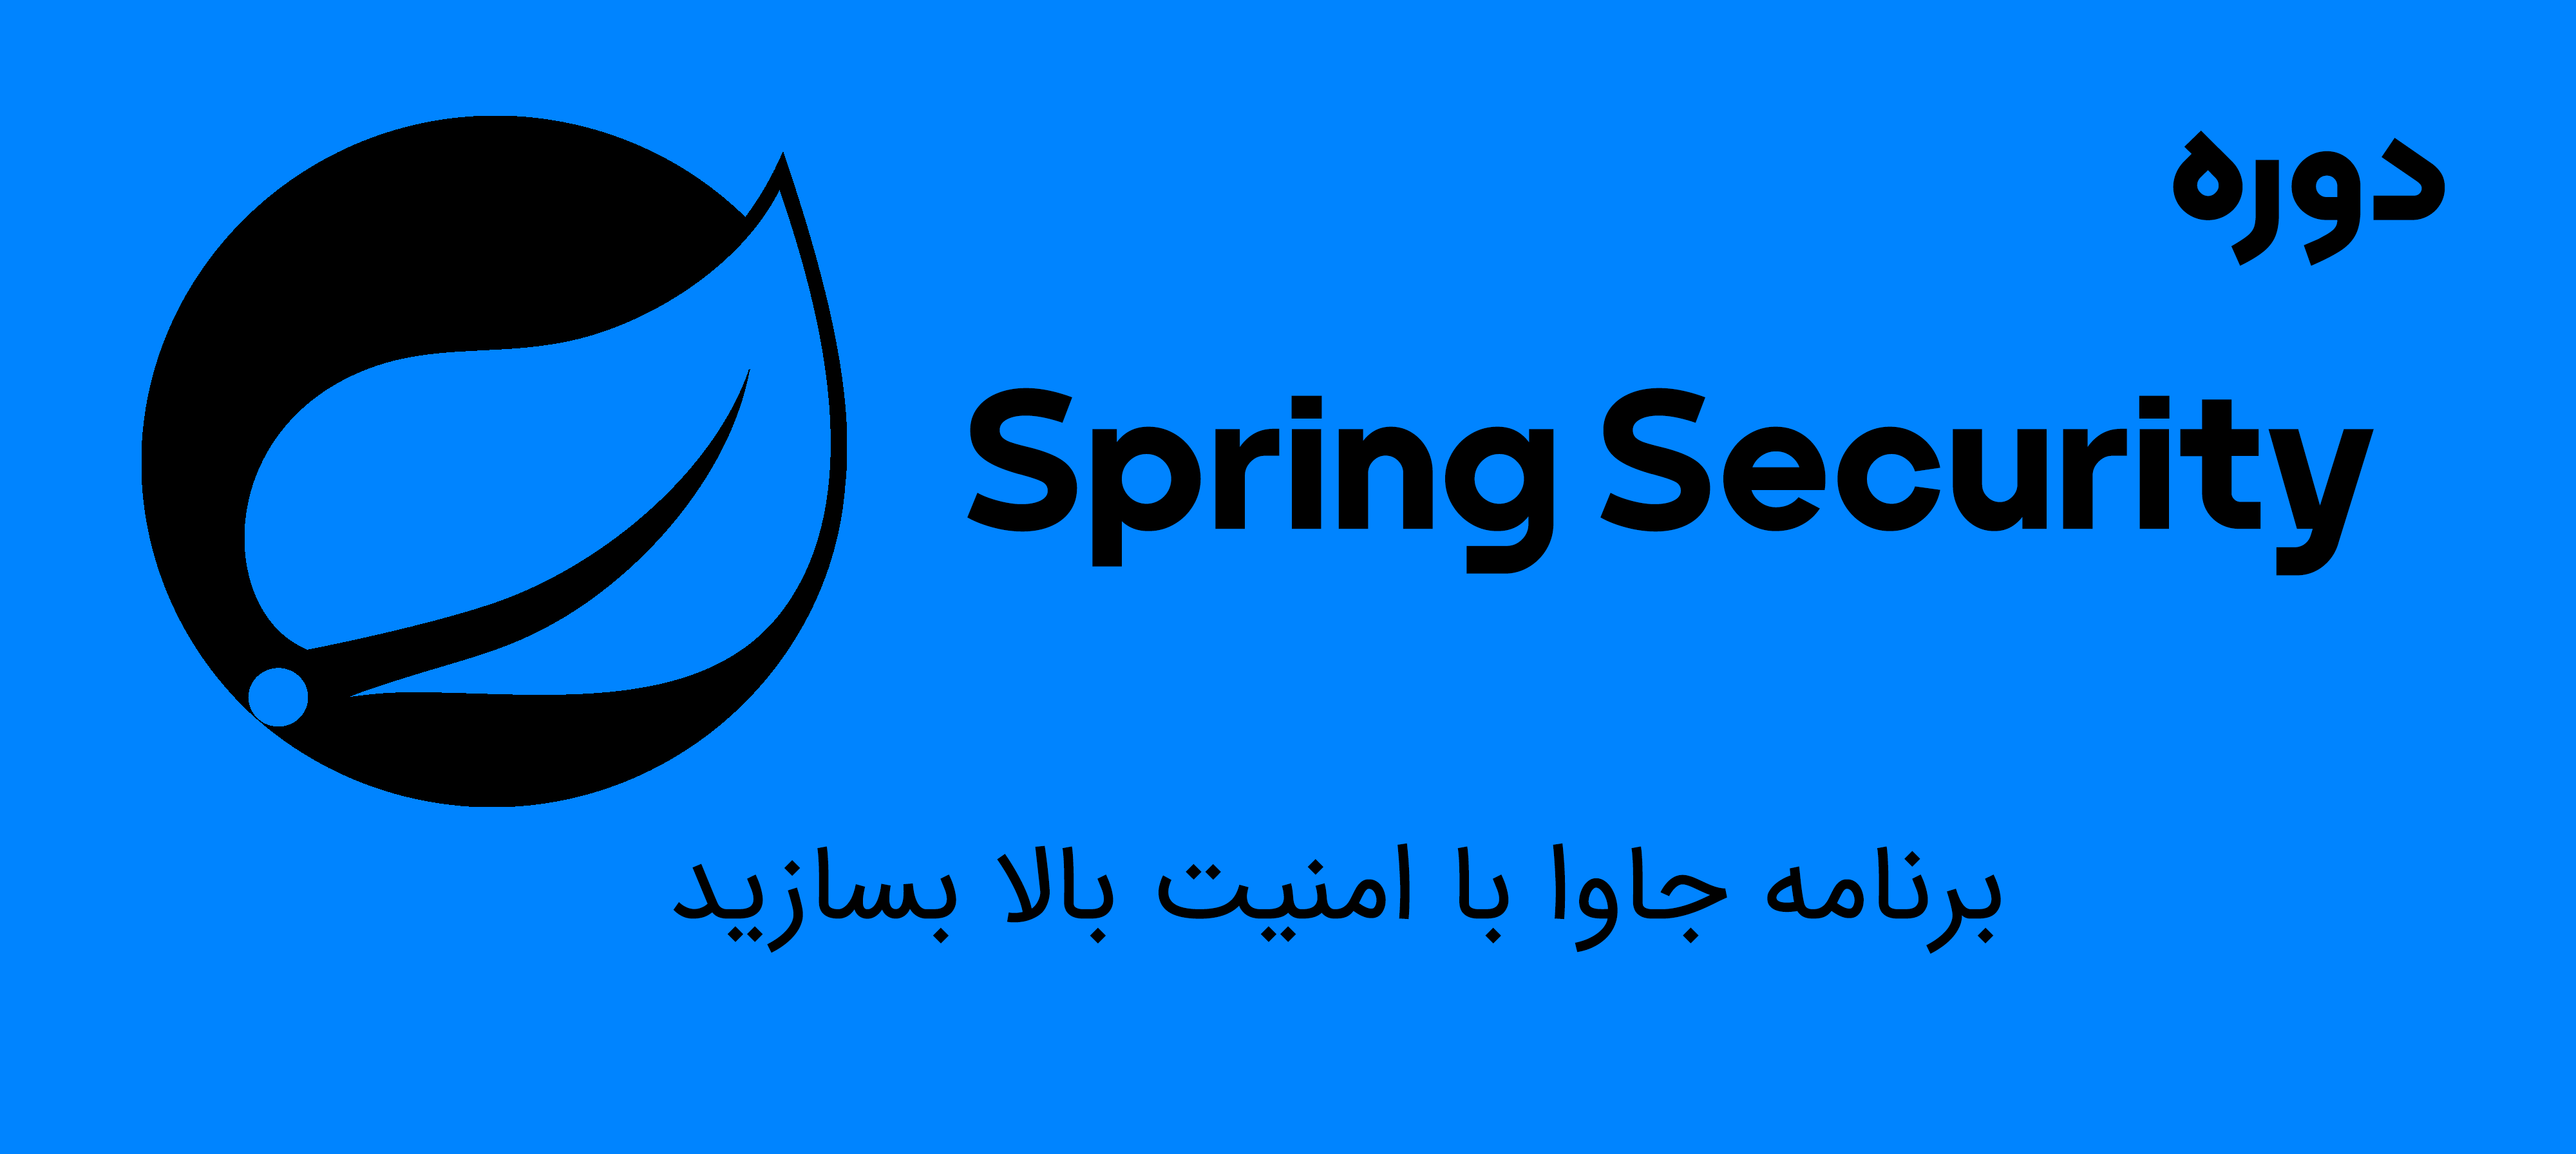 ثبت نام در دوره آموزش Spring security